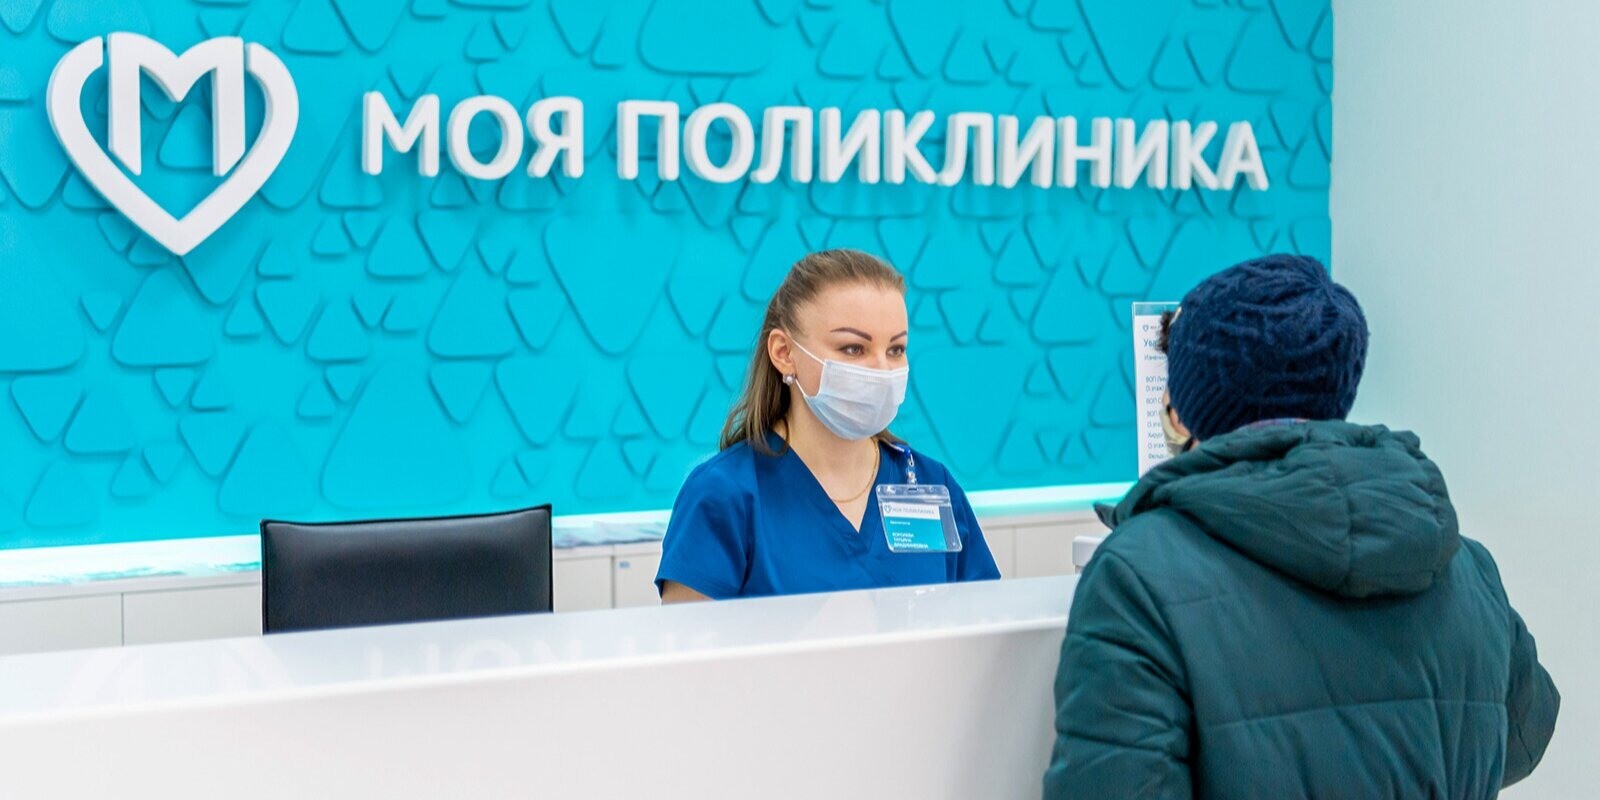 Собянин: порядка 40 тыс. детей получат медицинскую помощь в новых поликлиниках Москвы